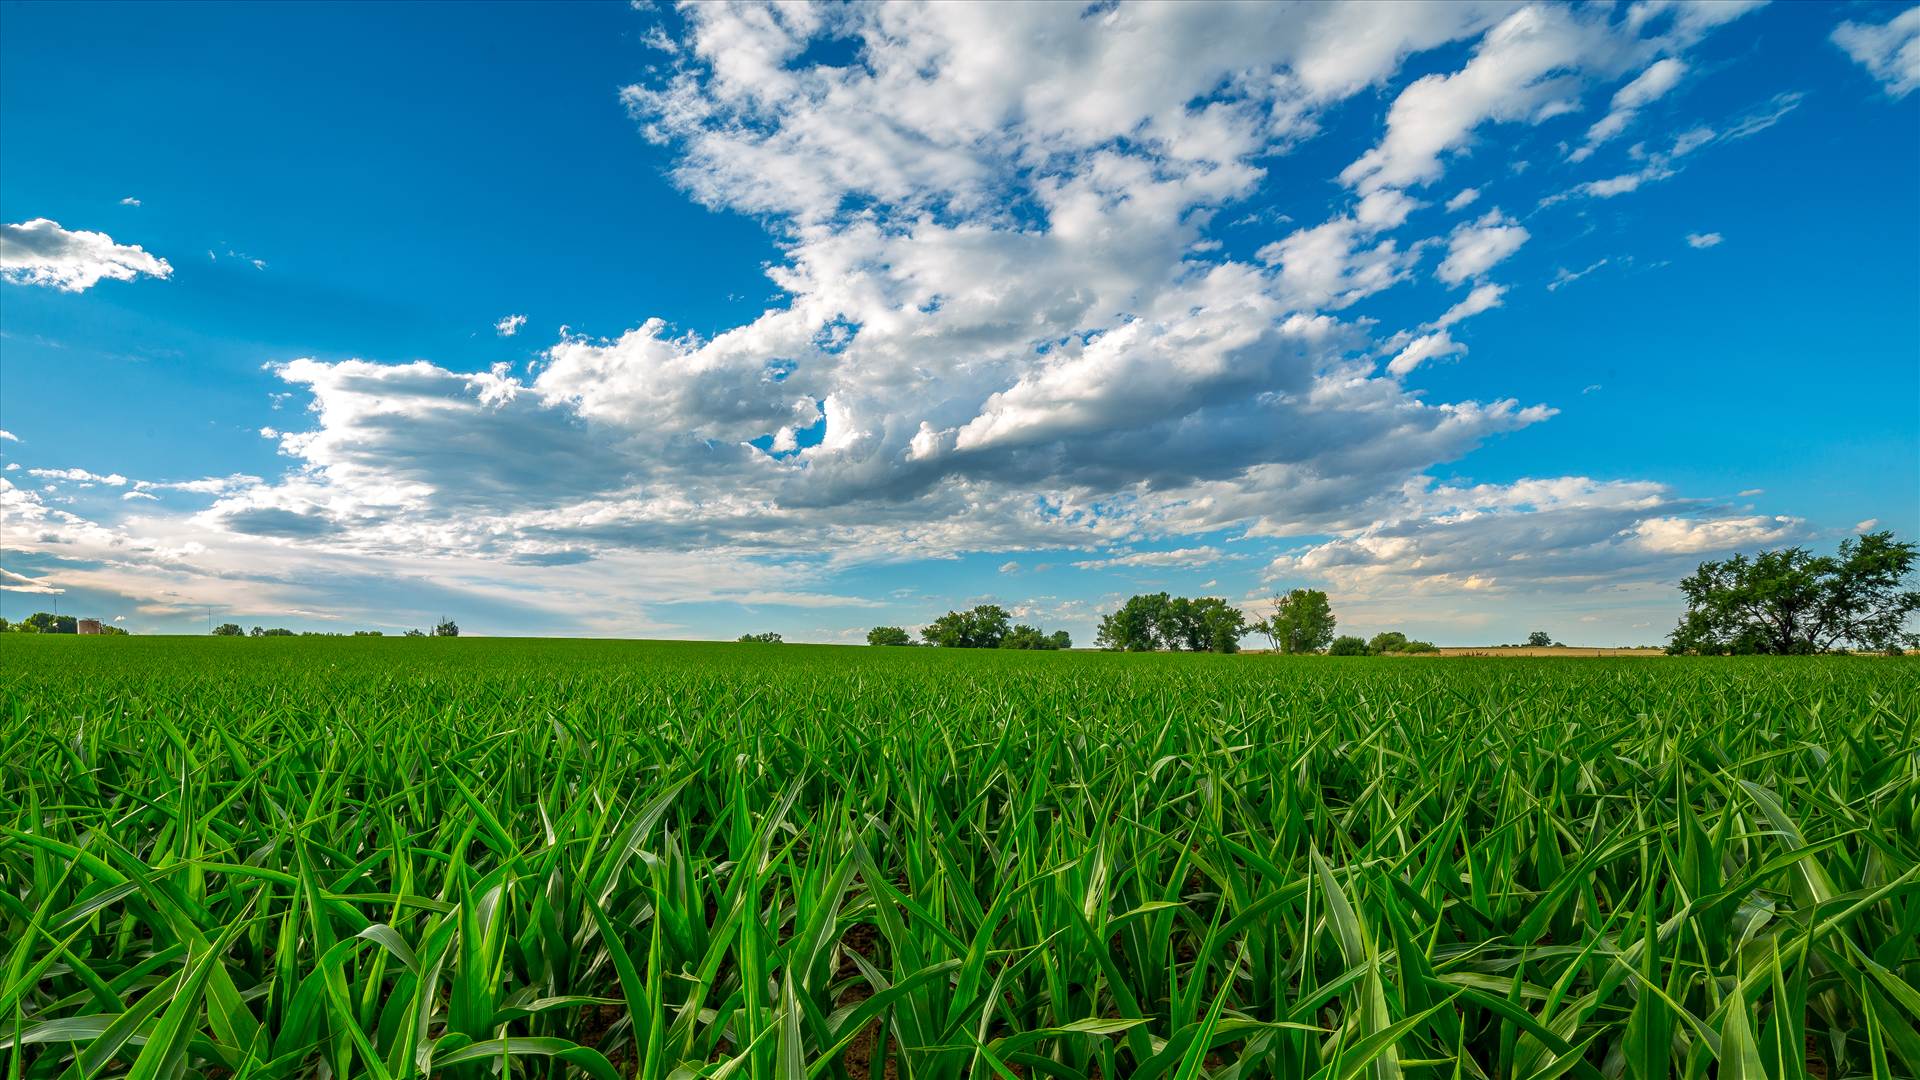 Summer Fields II - Corn fields near Longmont, Colorado by Scott Smith Photos